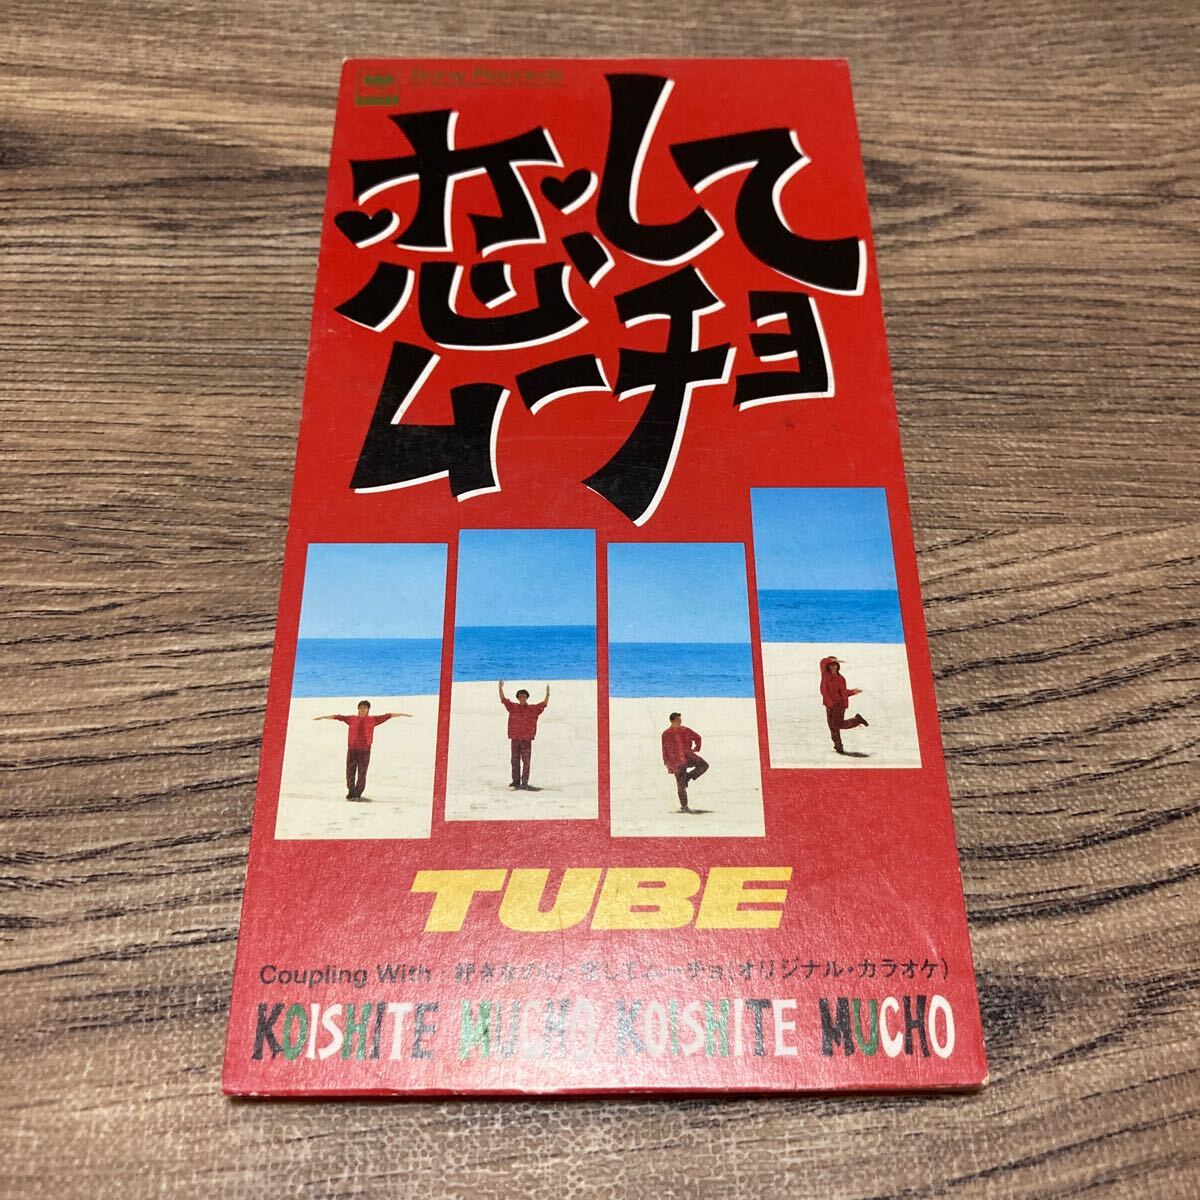 TUBE / 恋してムーチョ 8cmCD_画像1